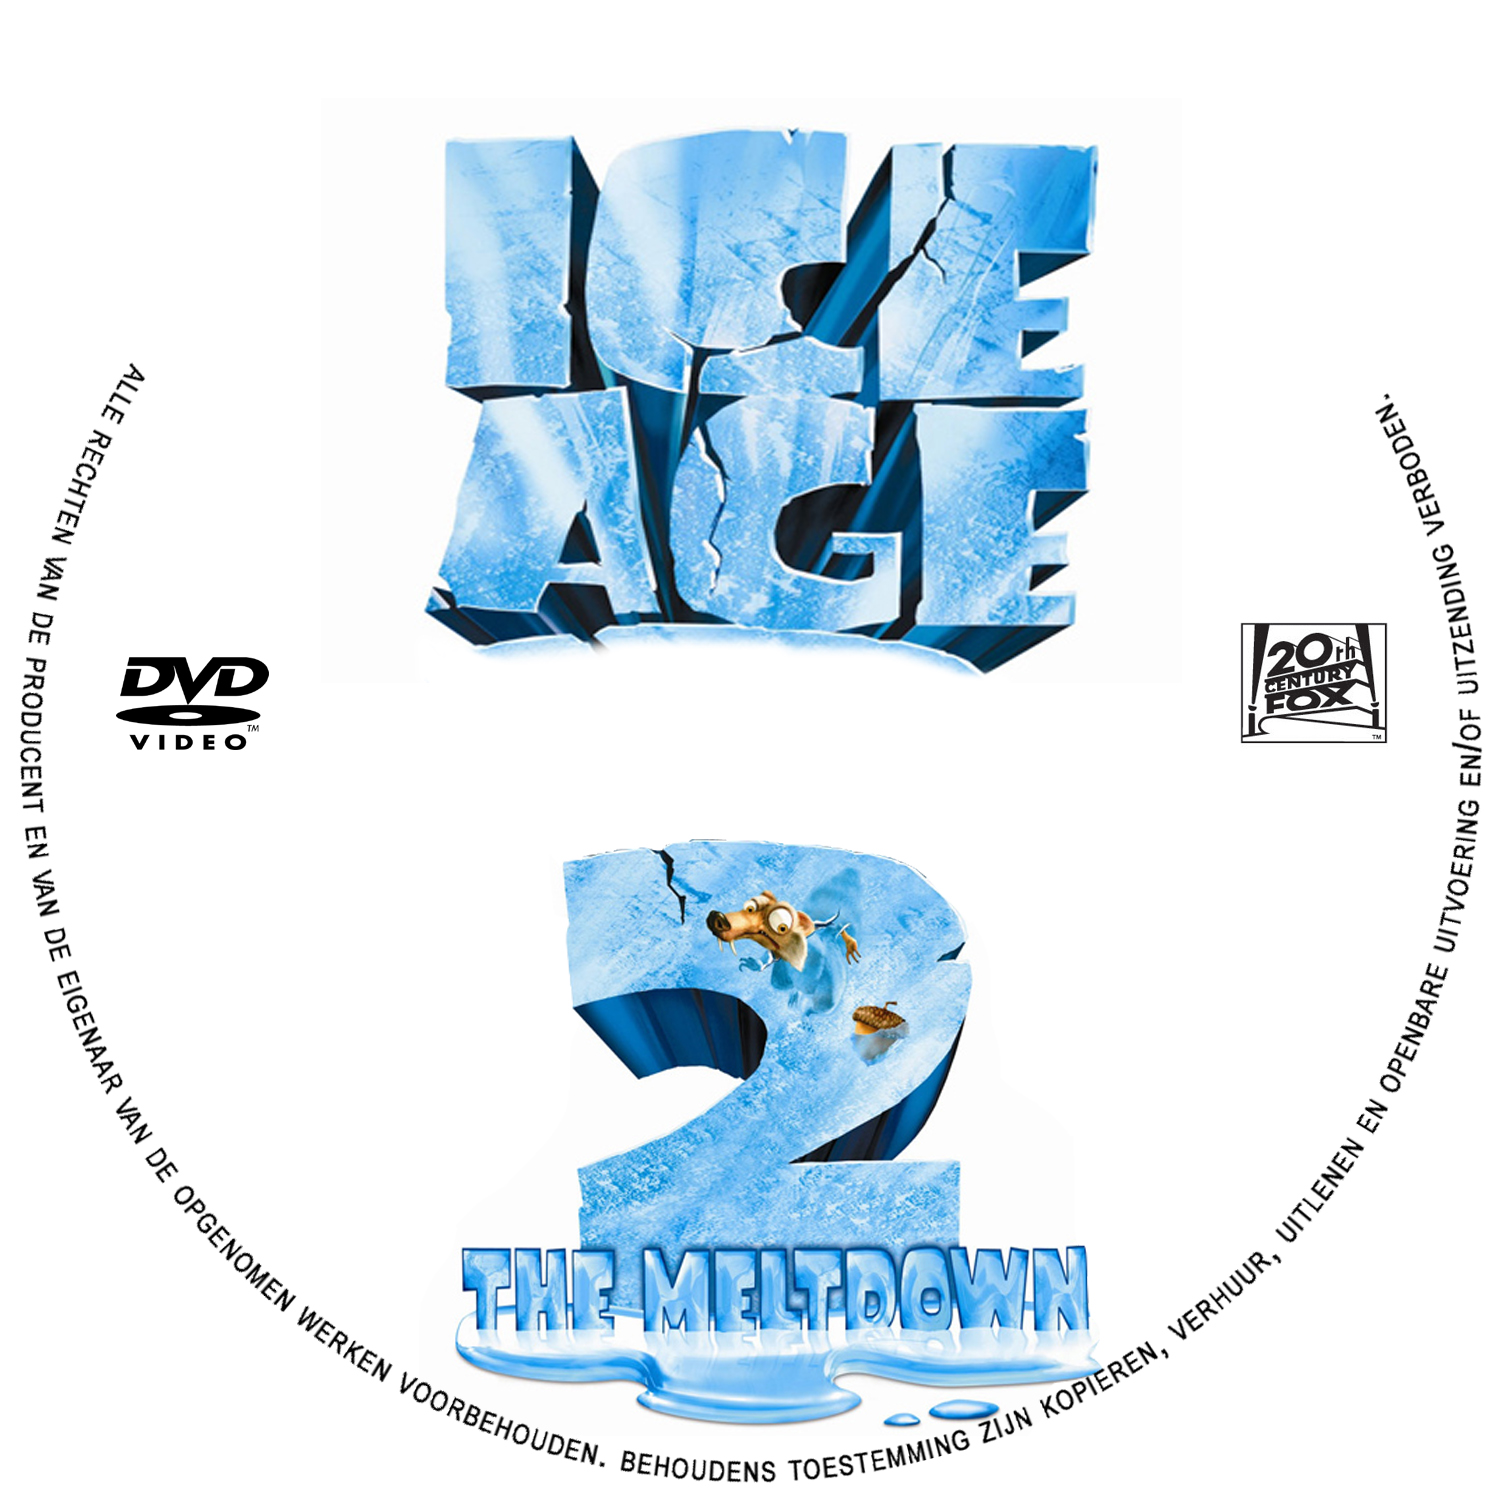 Ice Age2